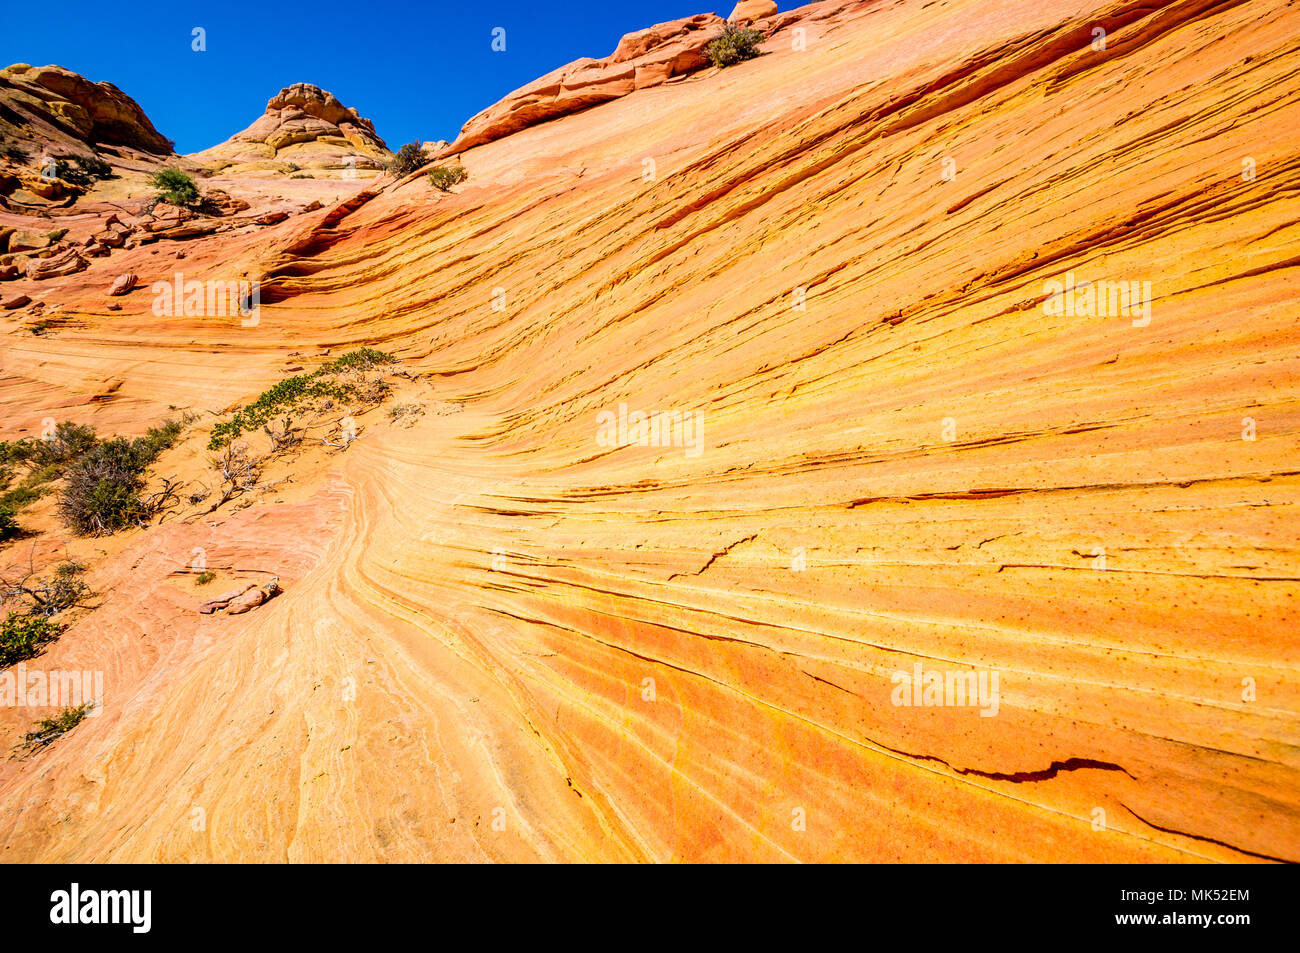 Bunte rote und goldene Streifen in sandsteinfelsen Bildung Cottonwood access Area South Coyote Buttes Vermilion Cliffs National Monument Arizona USA Stockfoto